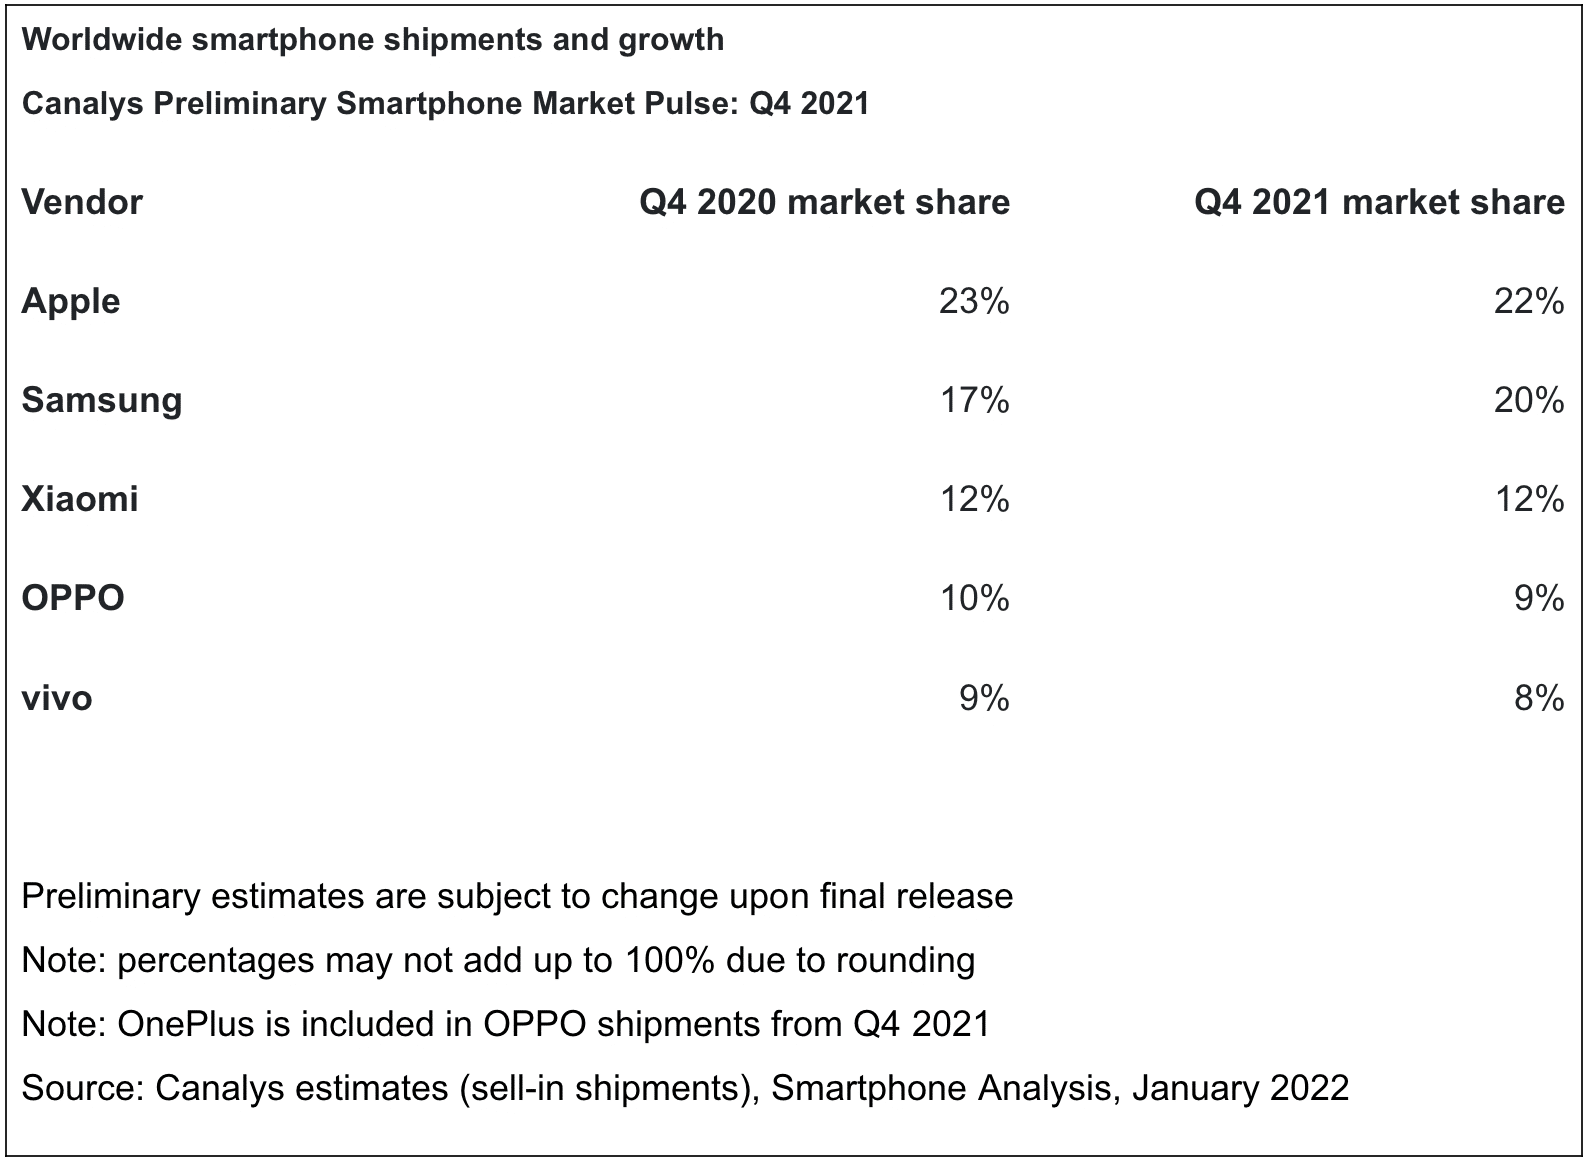 Pesquisa da Canalys sobre market share de smartphones